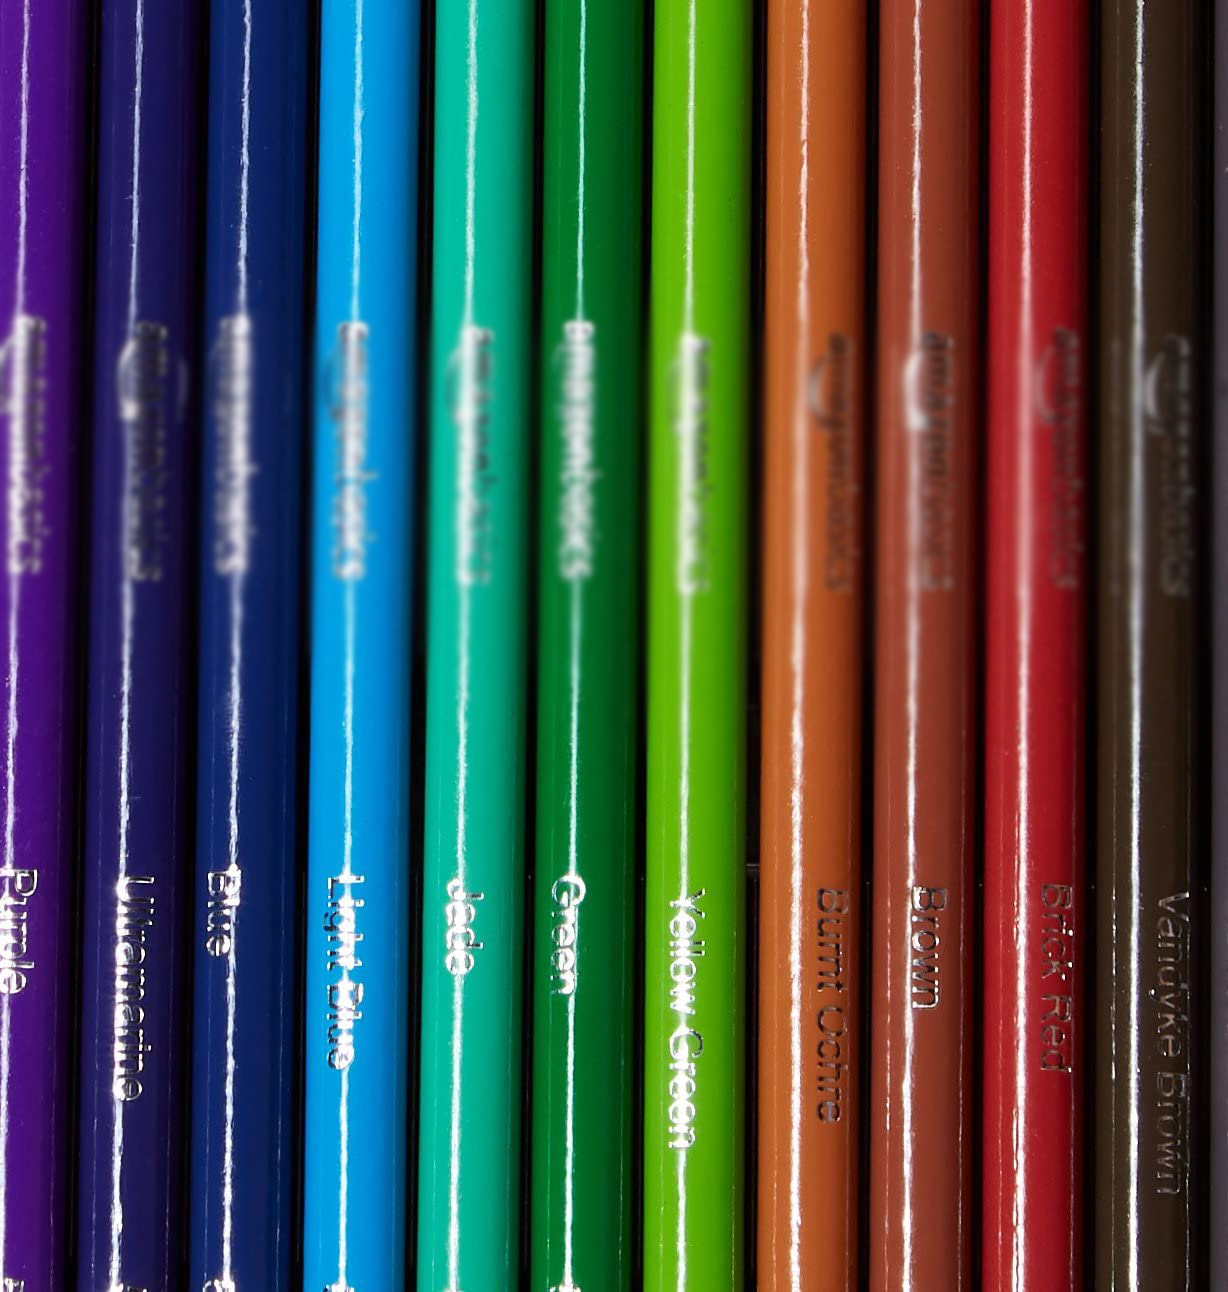 coloredpencil-2